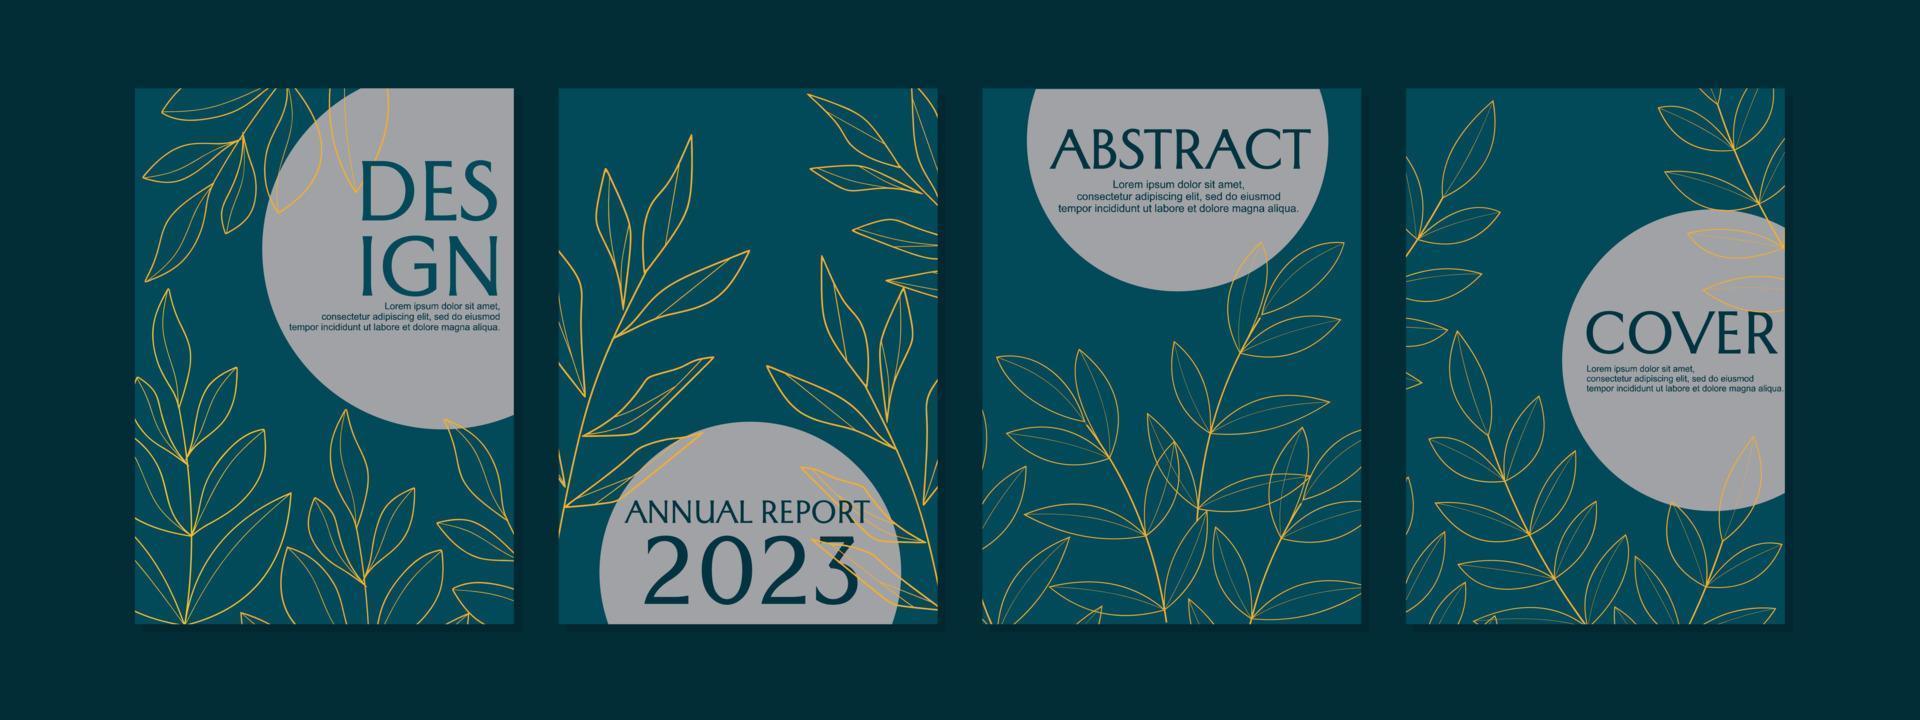 Reihe von Cover-Designs im botanischen Stil. abstrakter hintergrund der blattlinie kunst. für notizbücher, planer, broschüren, bücher, kataloge vektor